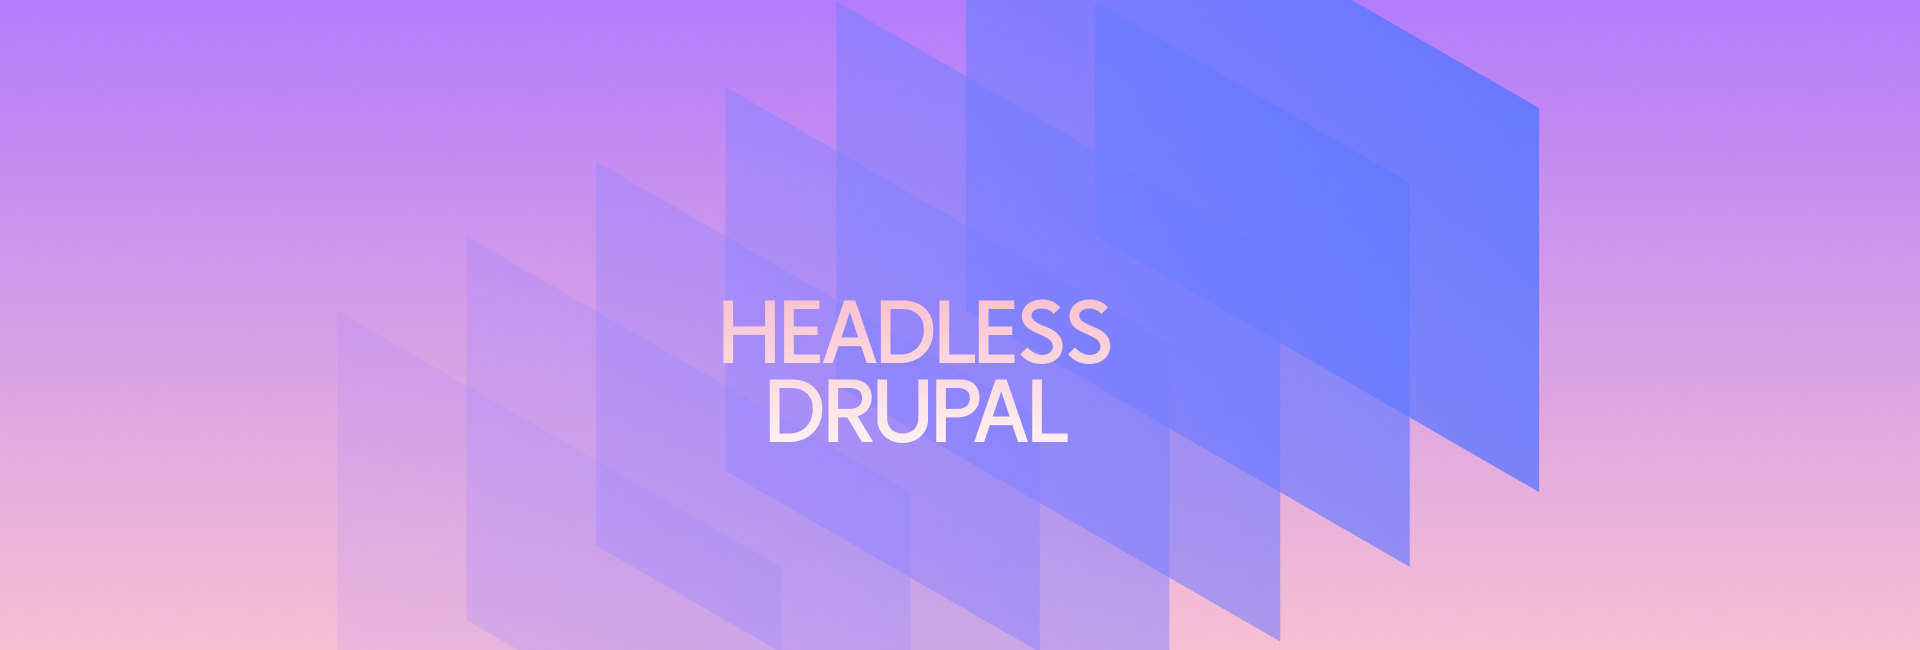 Headless Drupal - Hướng dẫn chi tiết ứng dụng hệ thống Drupal tách rời cho doanh nghiệp